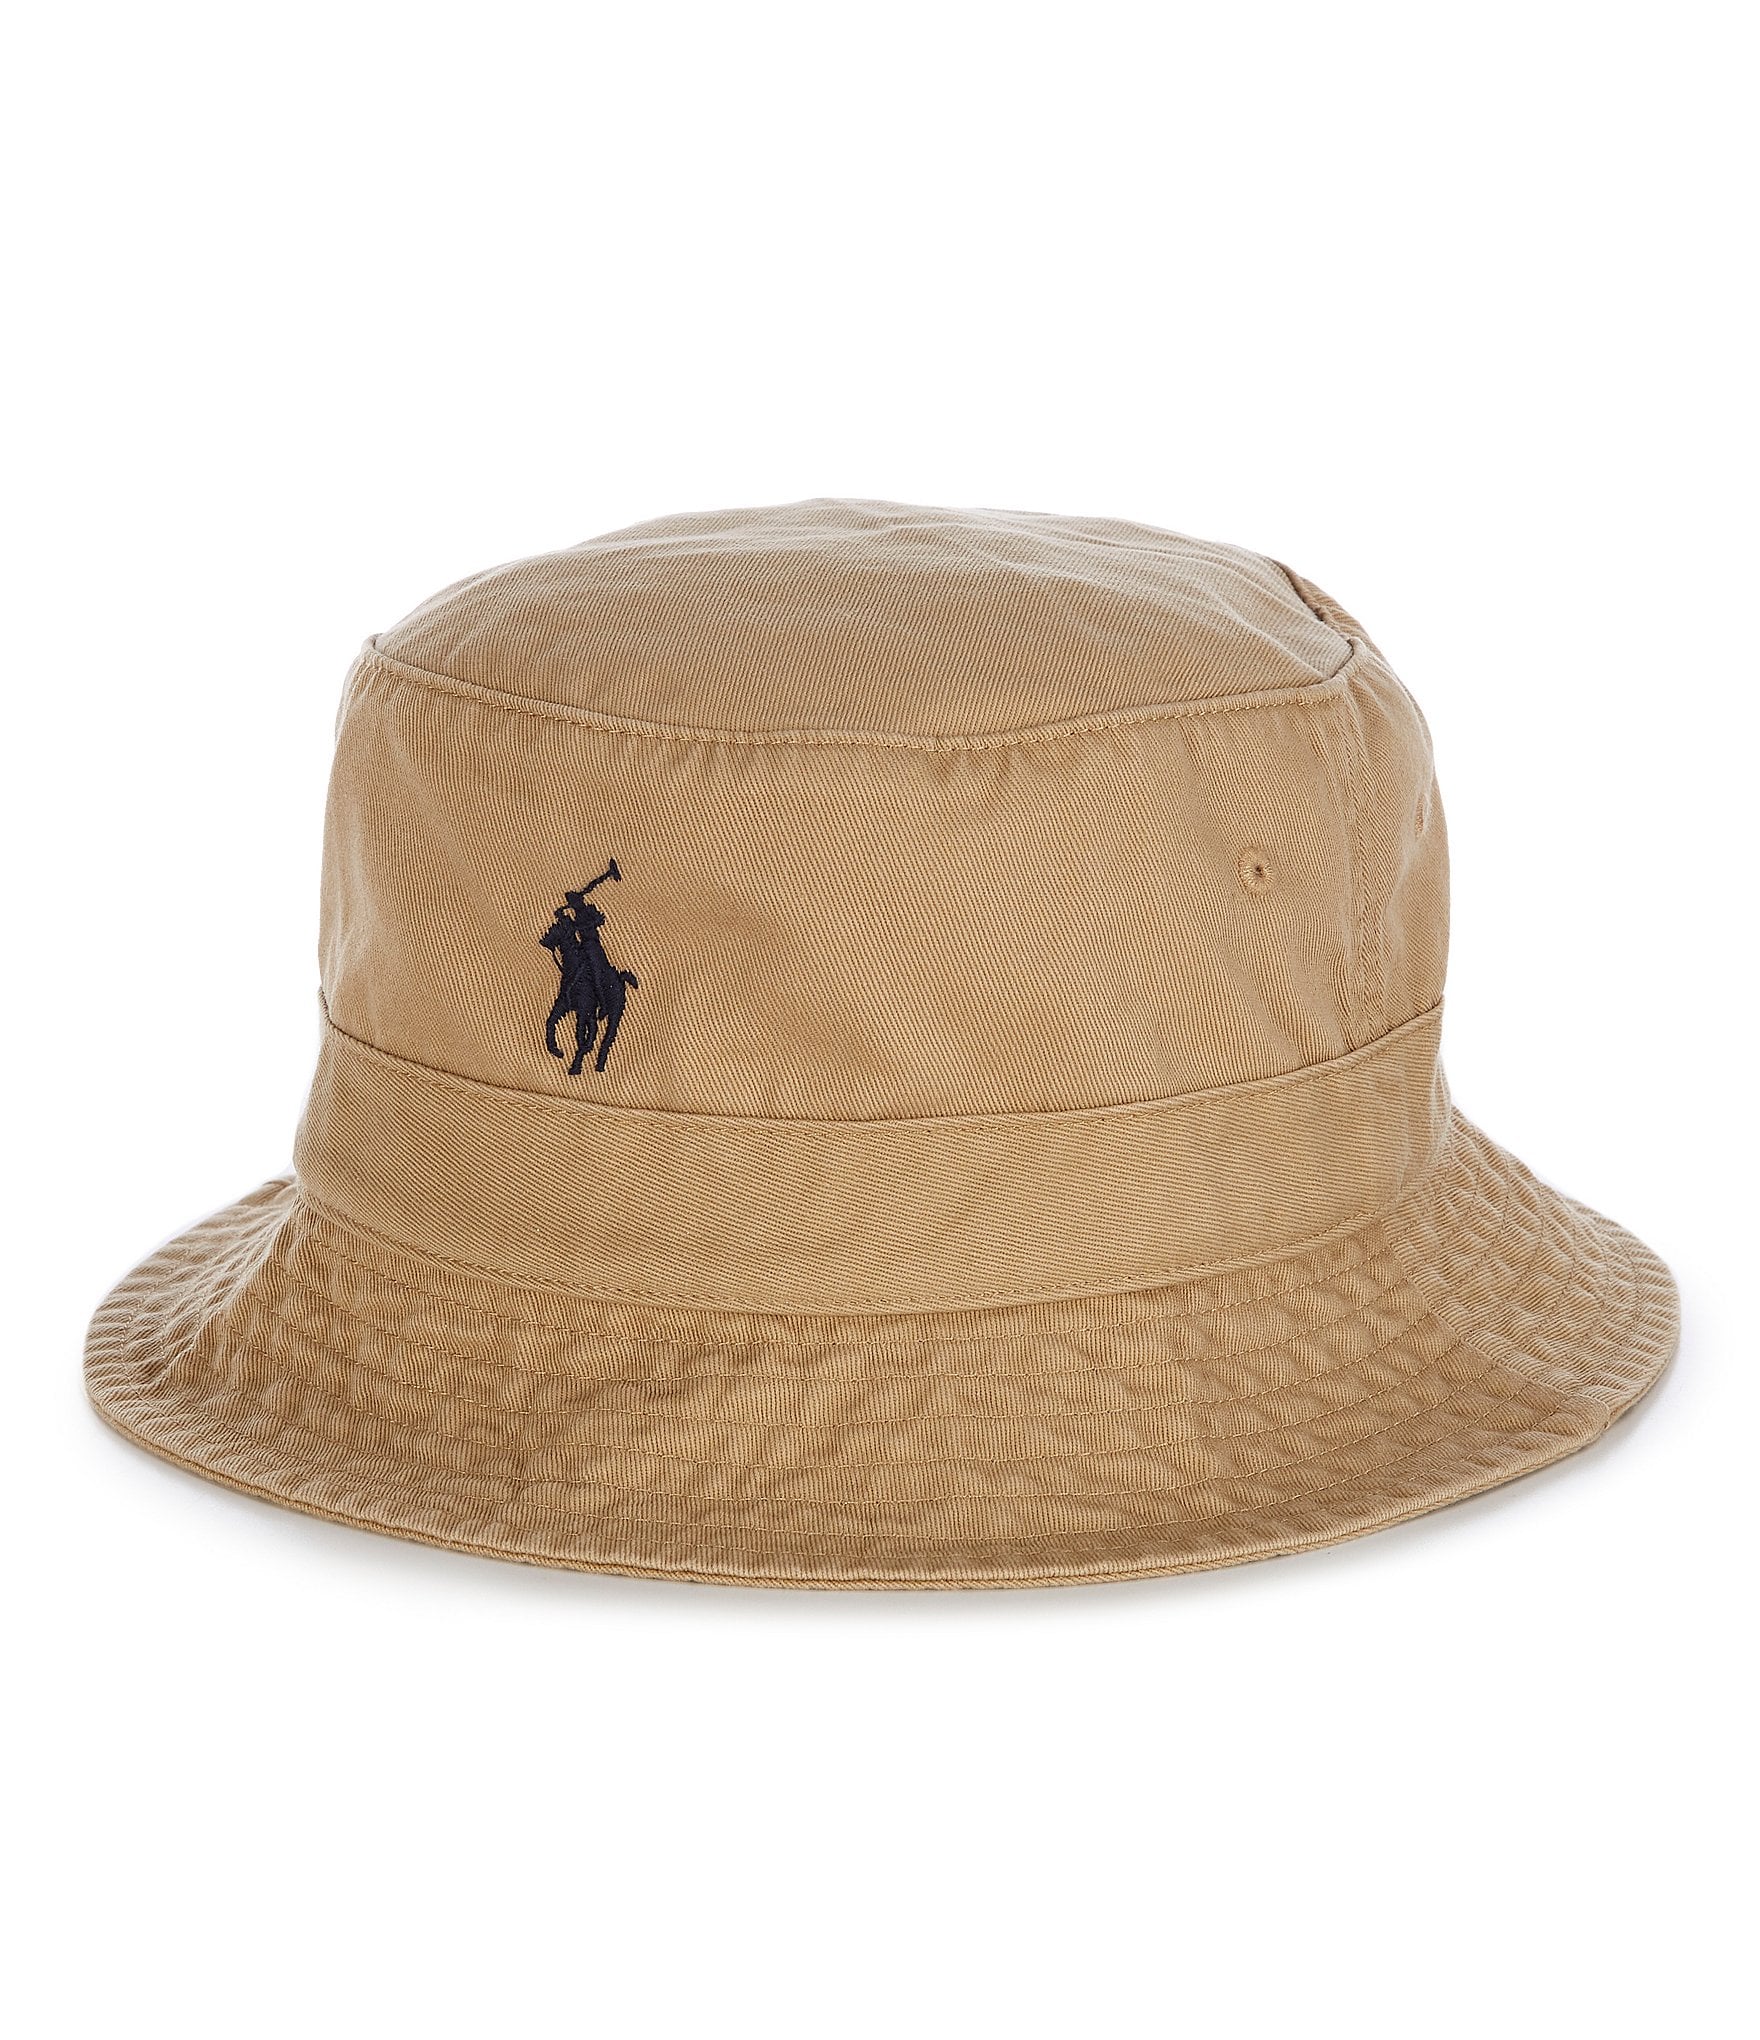 Polo Ralph Lauren Men's Hats